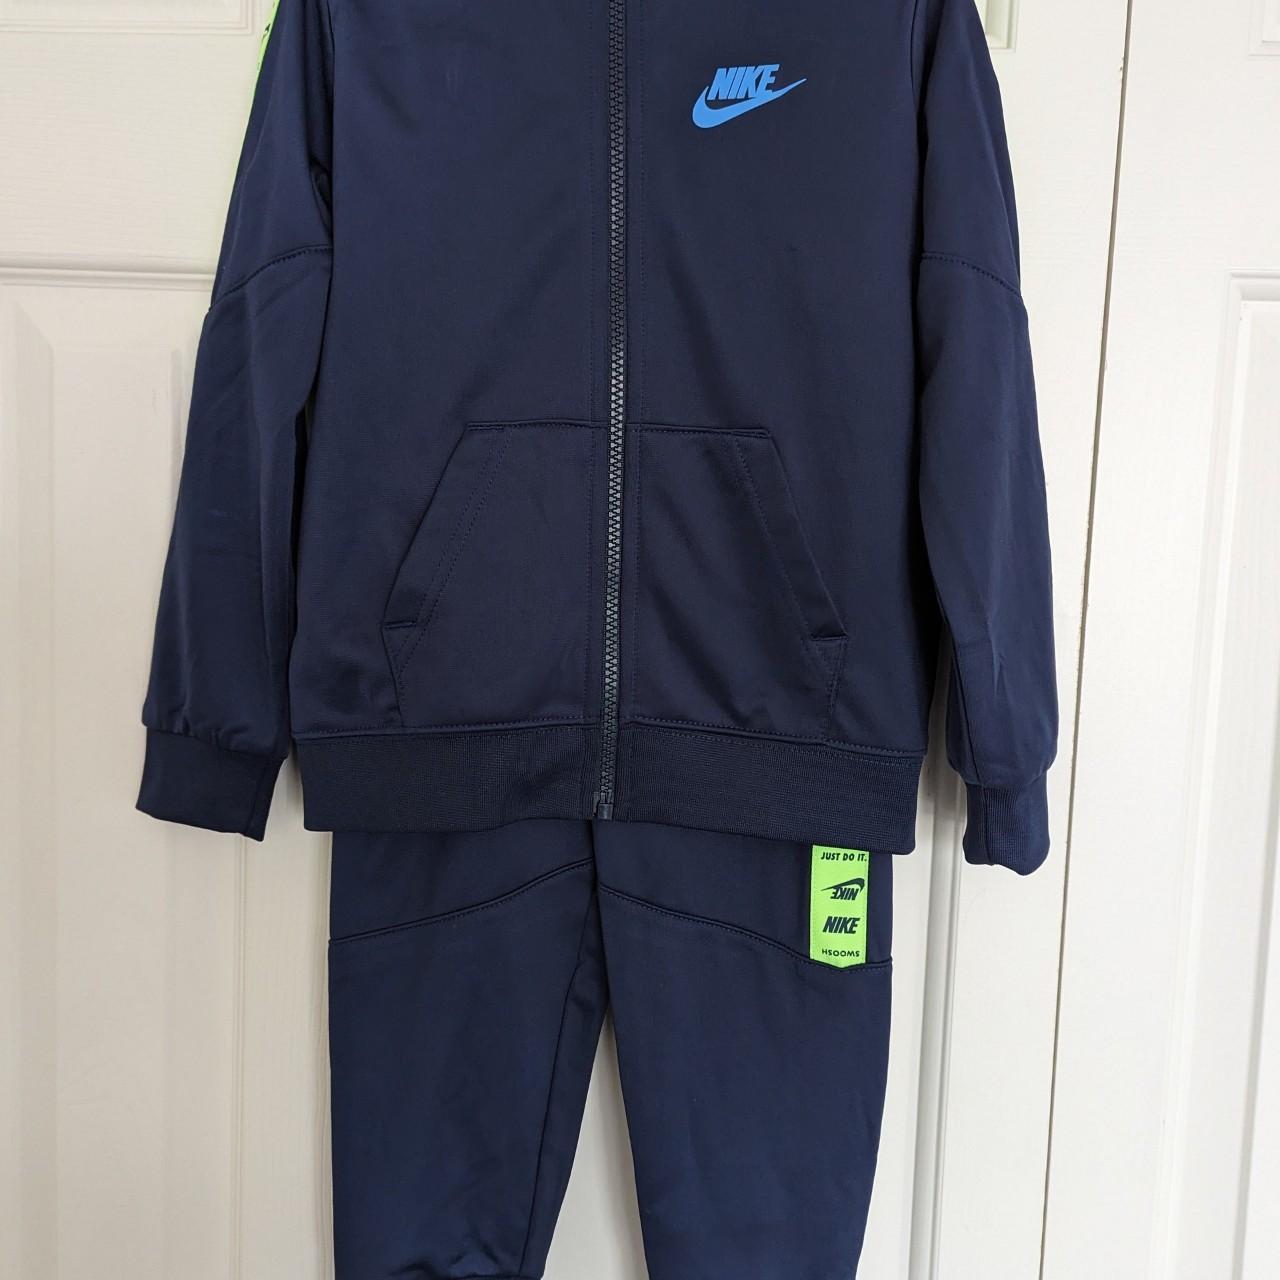 New Nike Boys Track Jacket and Pants Set Choose Size & Color MSRP $48 | eBay